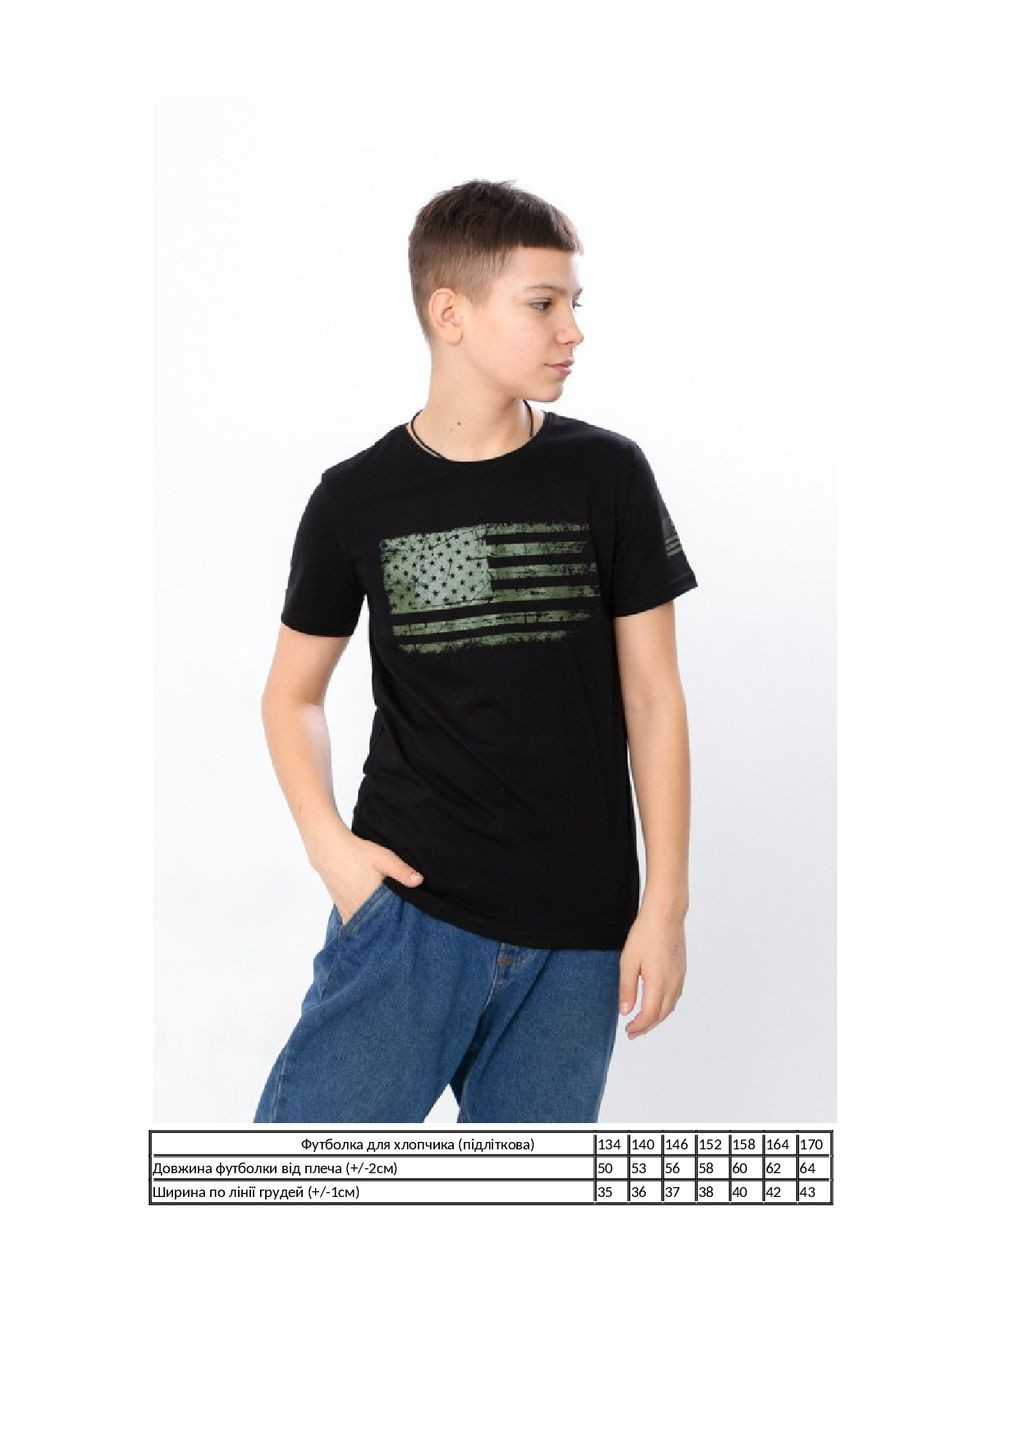 Чорна літня футболка для хлопчика (підліткова) KINDER MODE